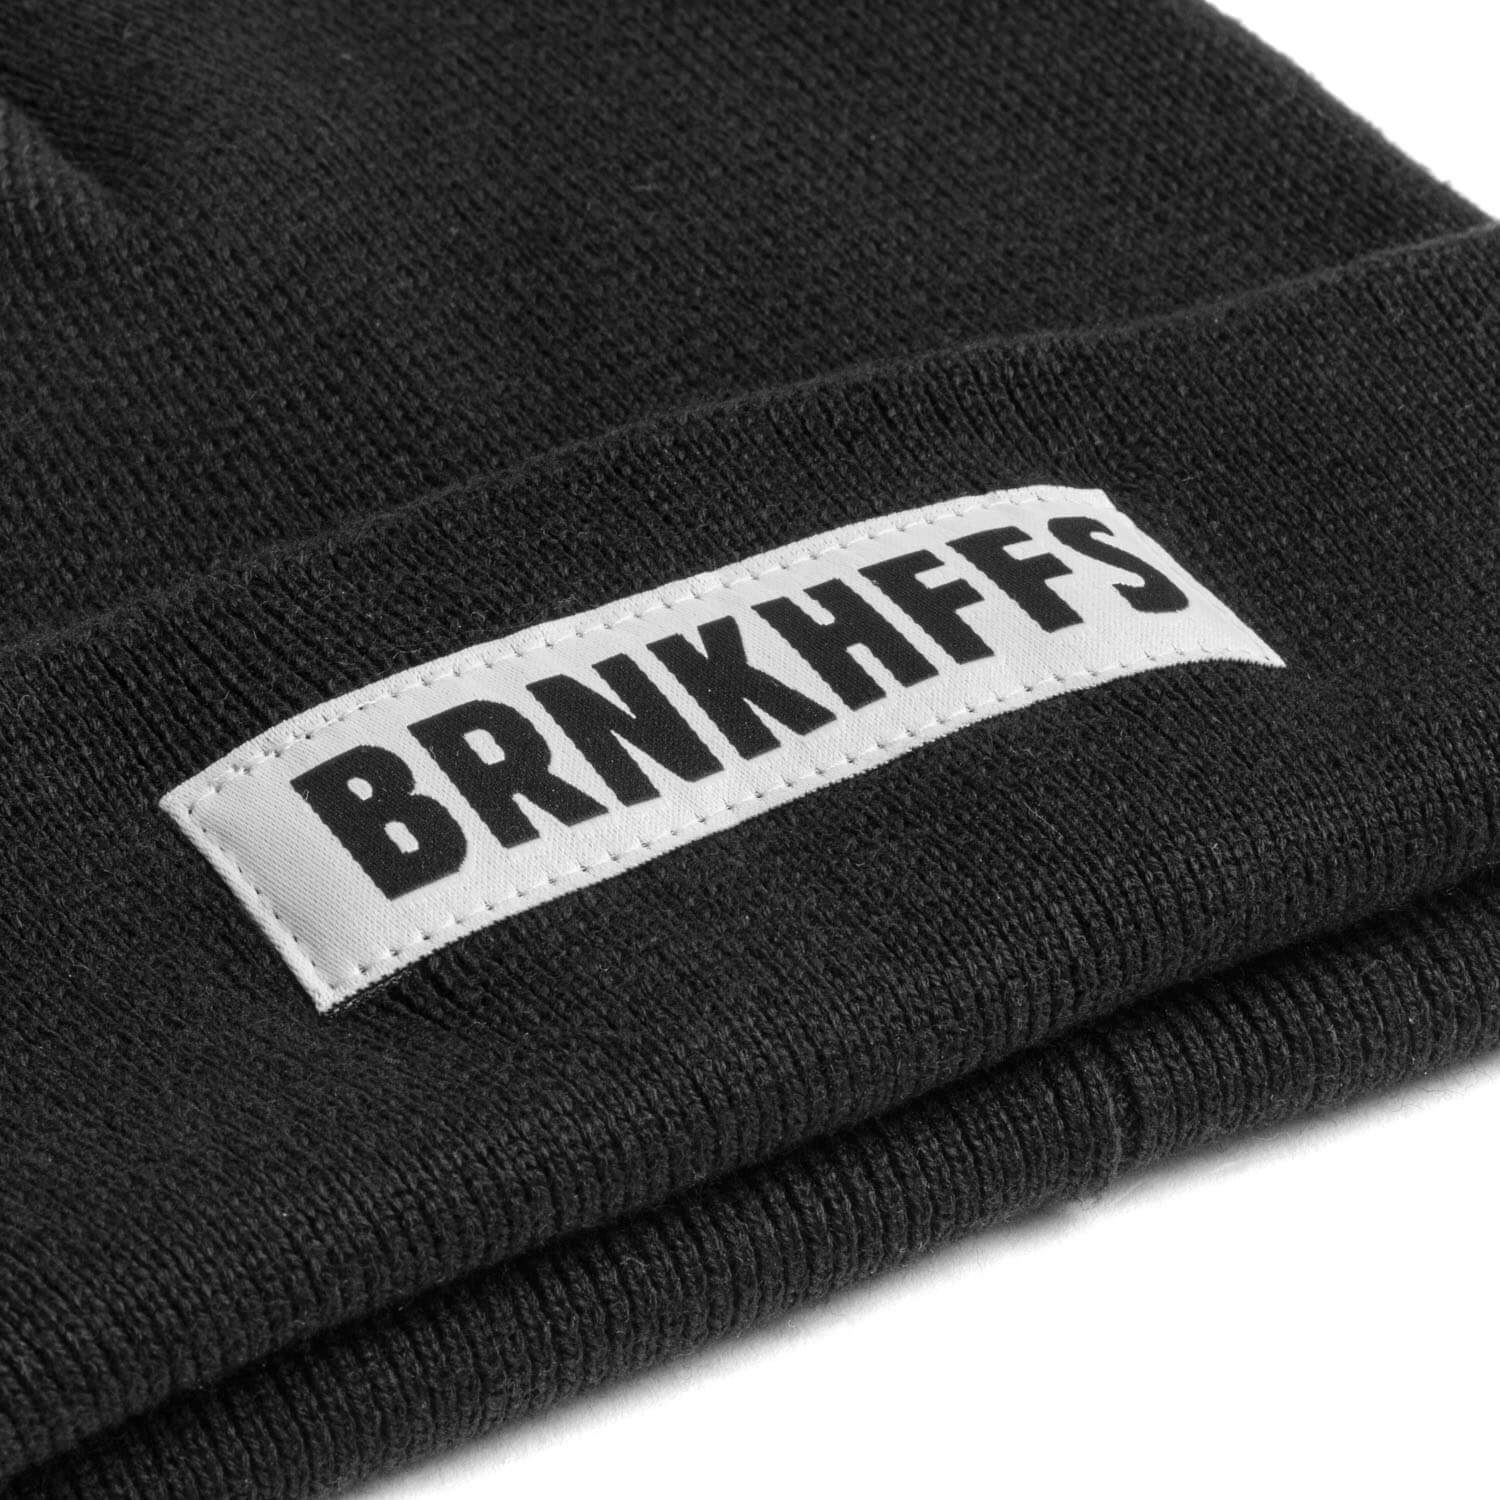 Brinkhoff's Strickmütze "BRNKHFFS"